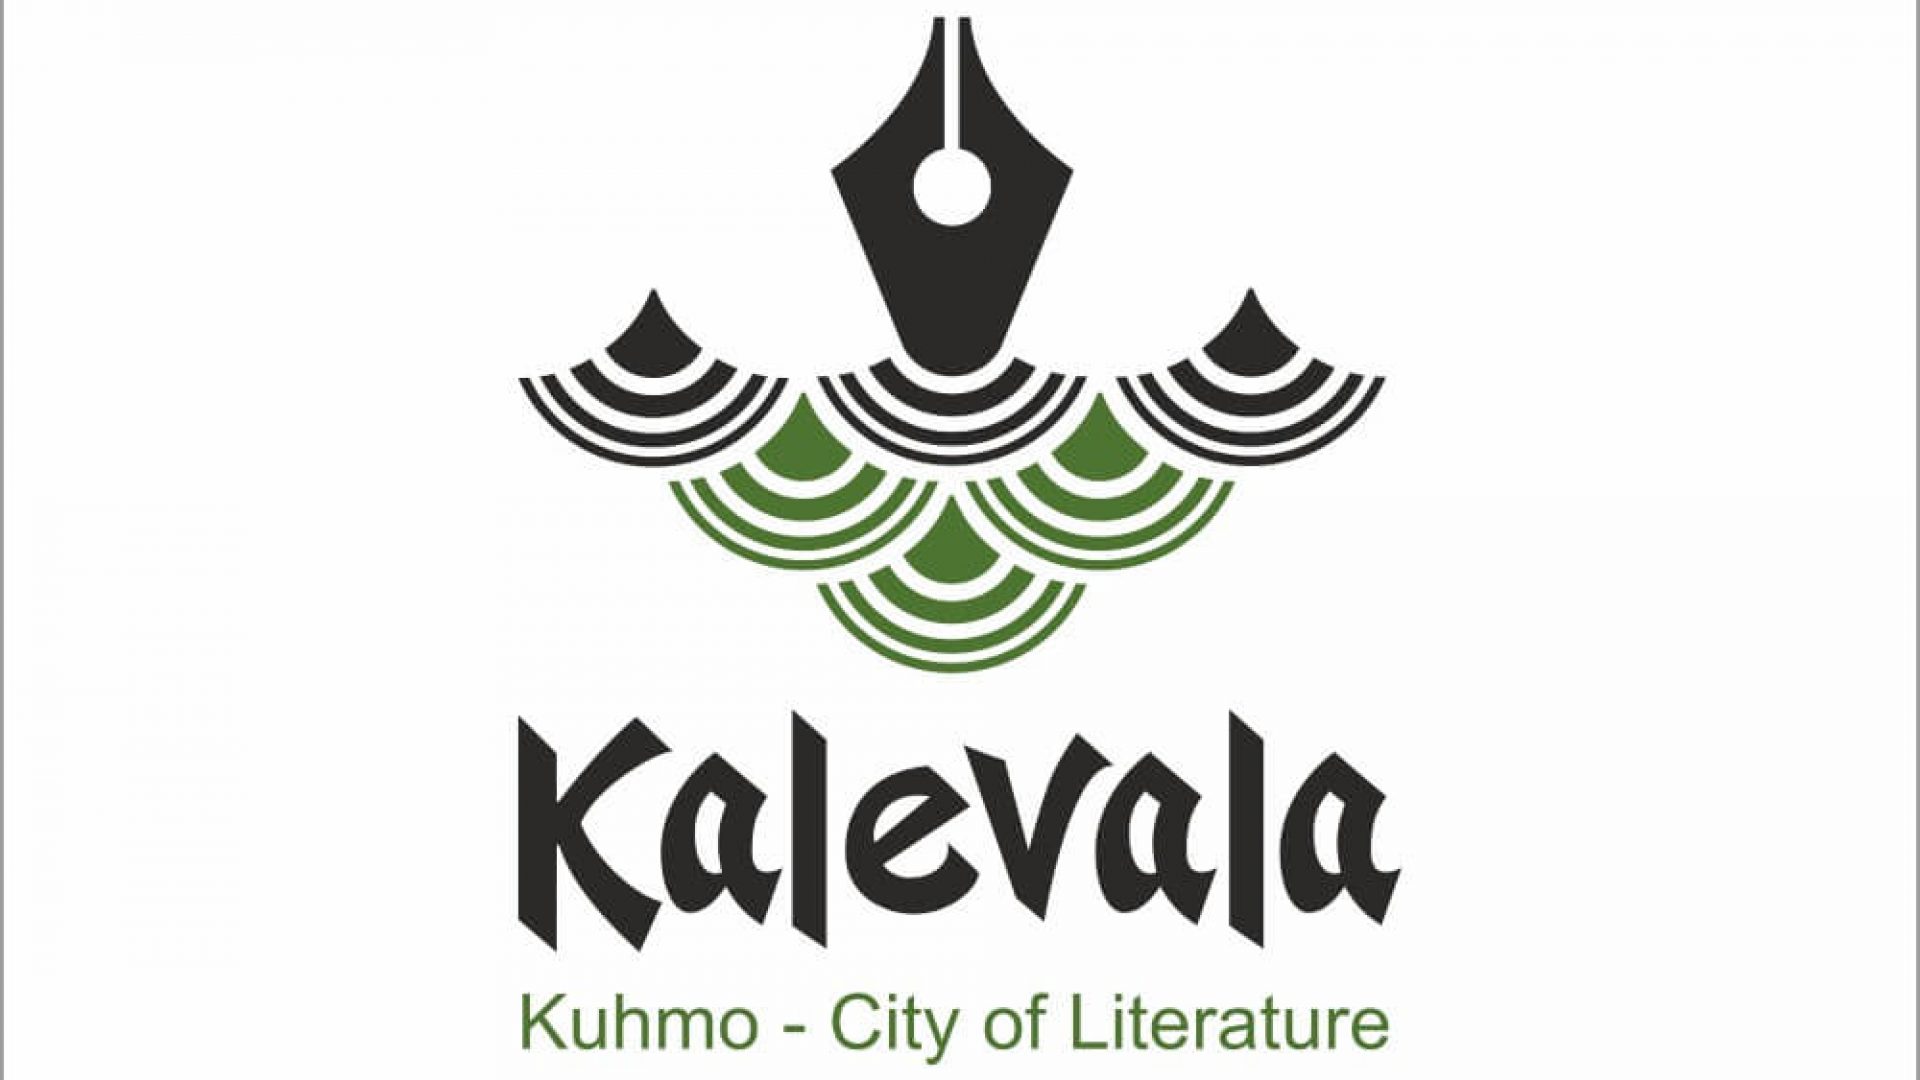 Kirjallisuuskaupunki Kuhmo logo.